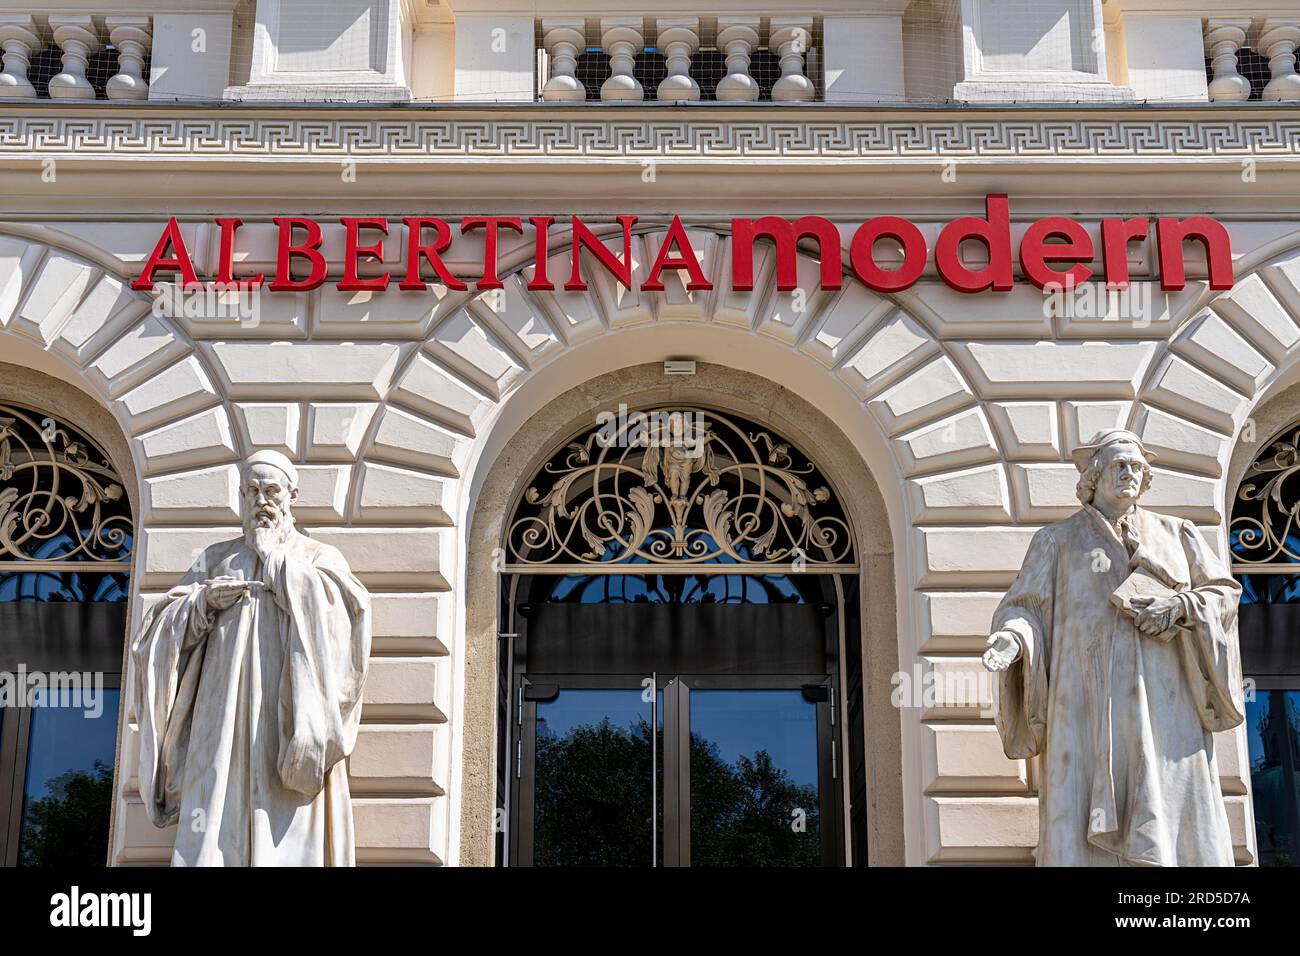 Albertina Modern, Museum für zeitgenössische Kunst, Kuenstlerhaus am Karlsplatz, Wien, Österreich Stockfoto